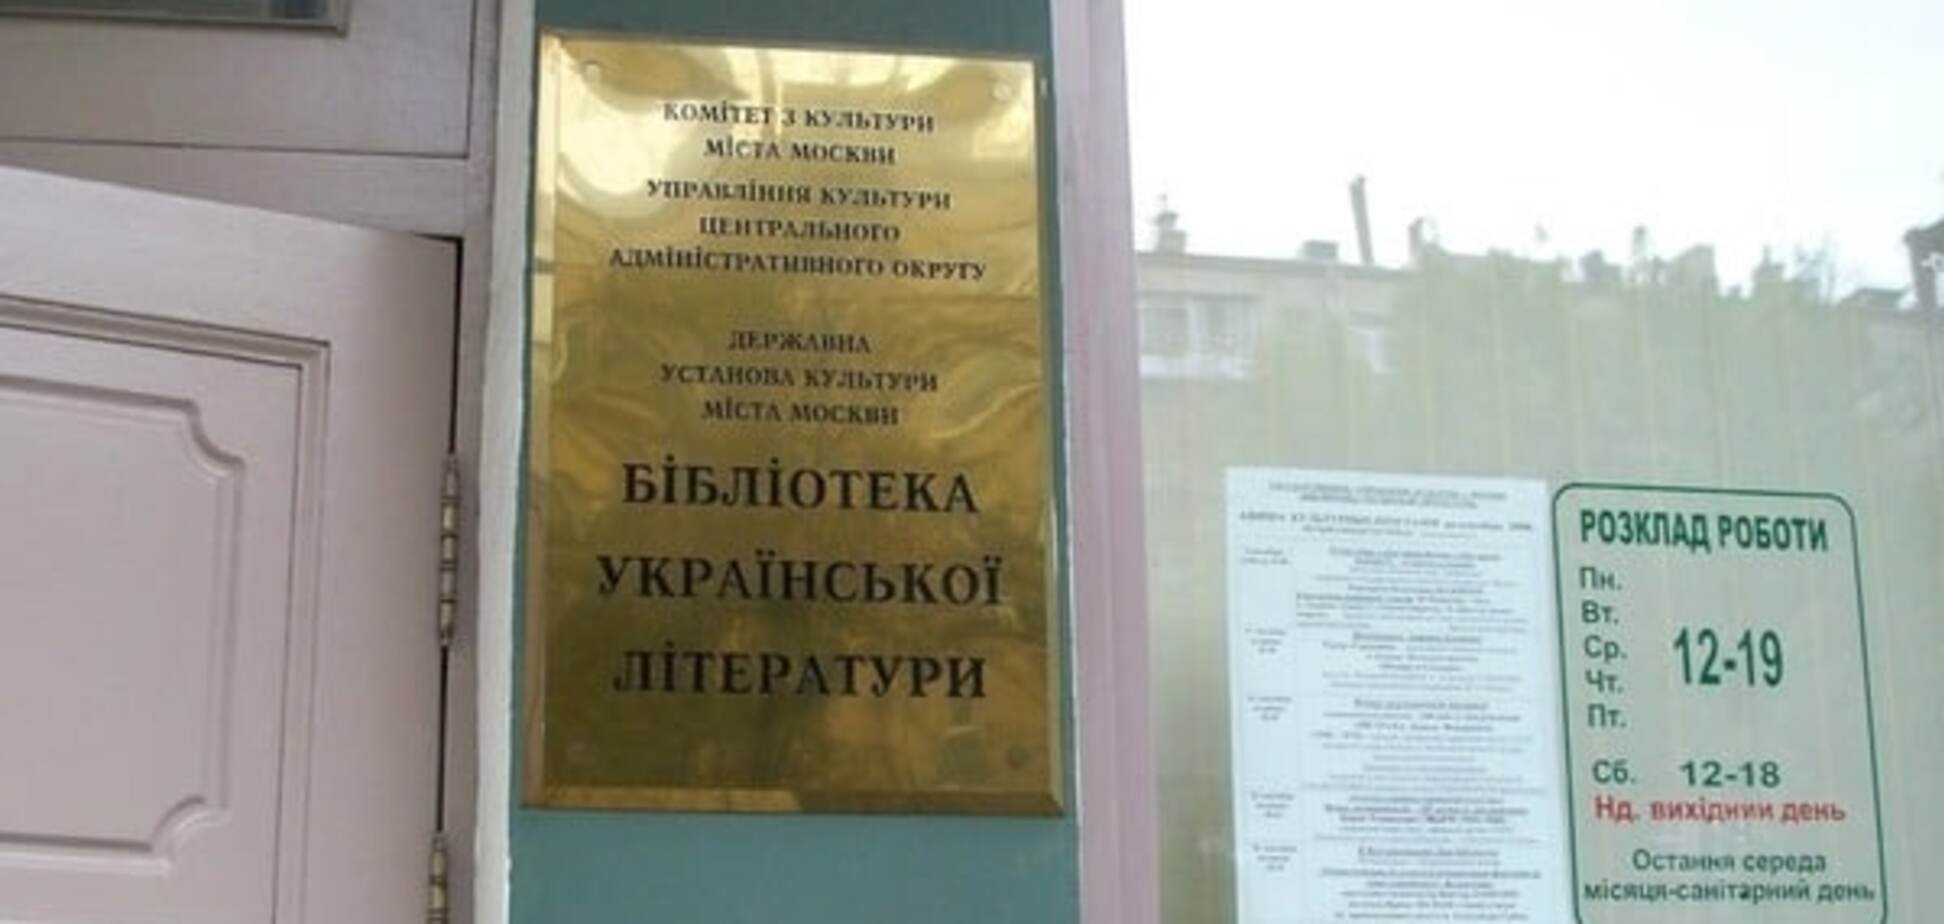 Власти Москвы решили закрыть Библиотеку украинской литературы - адвокат